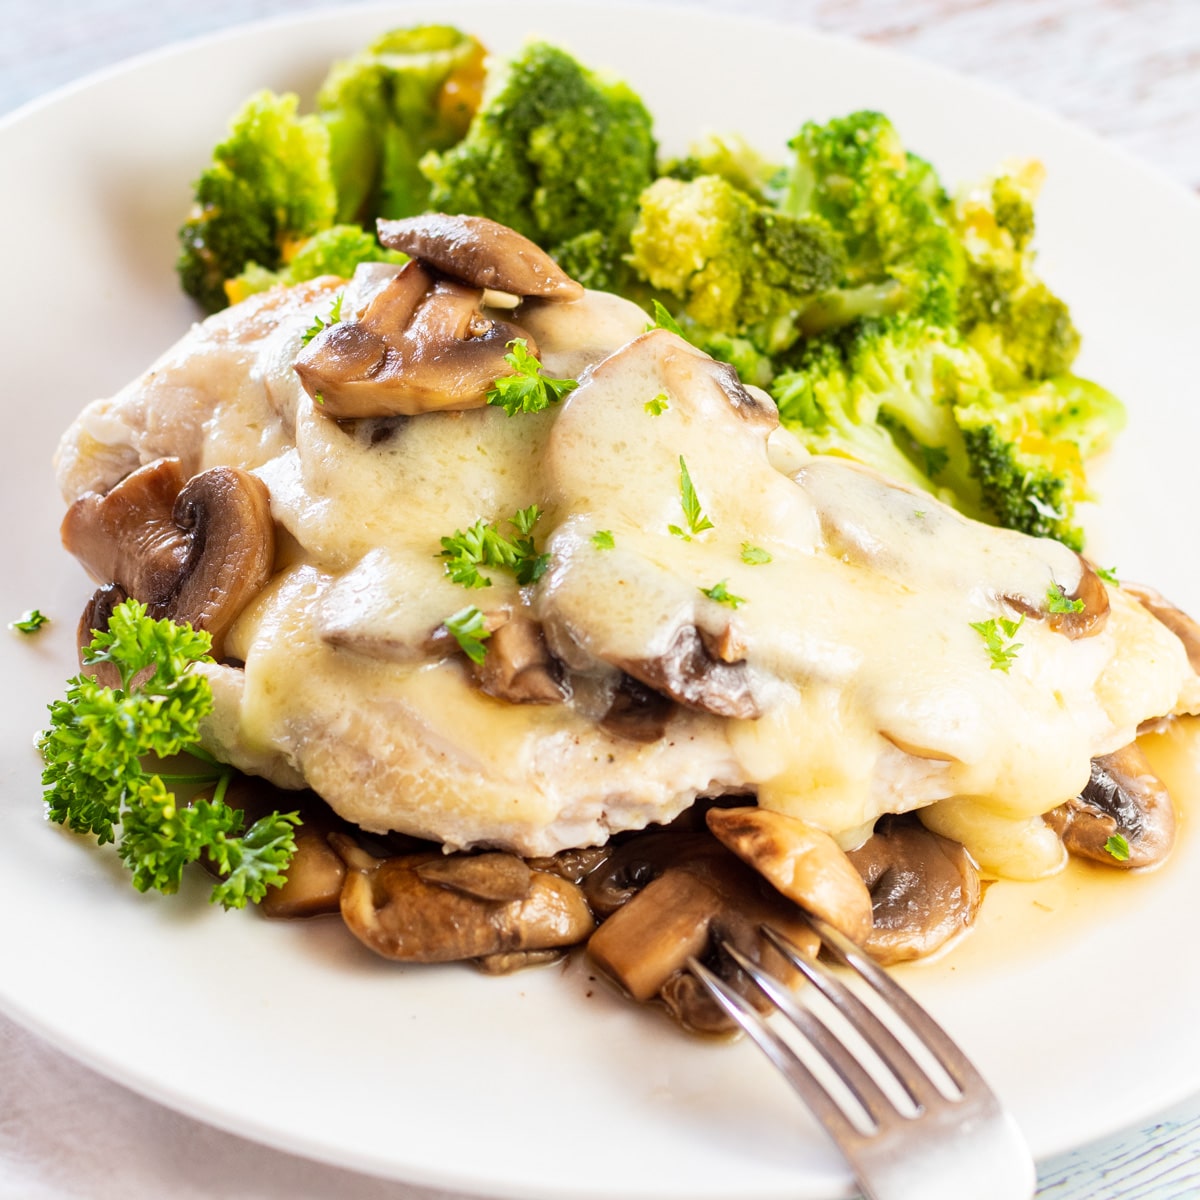 Nježna, ukusna švicarska piletina od gljiva poslužuje se preko još pirjanih gljiva na bijelom tanjuru.